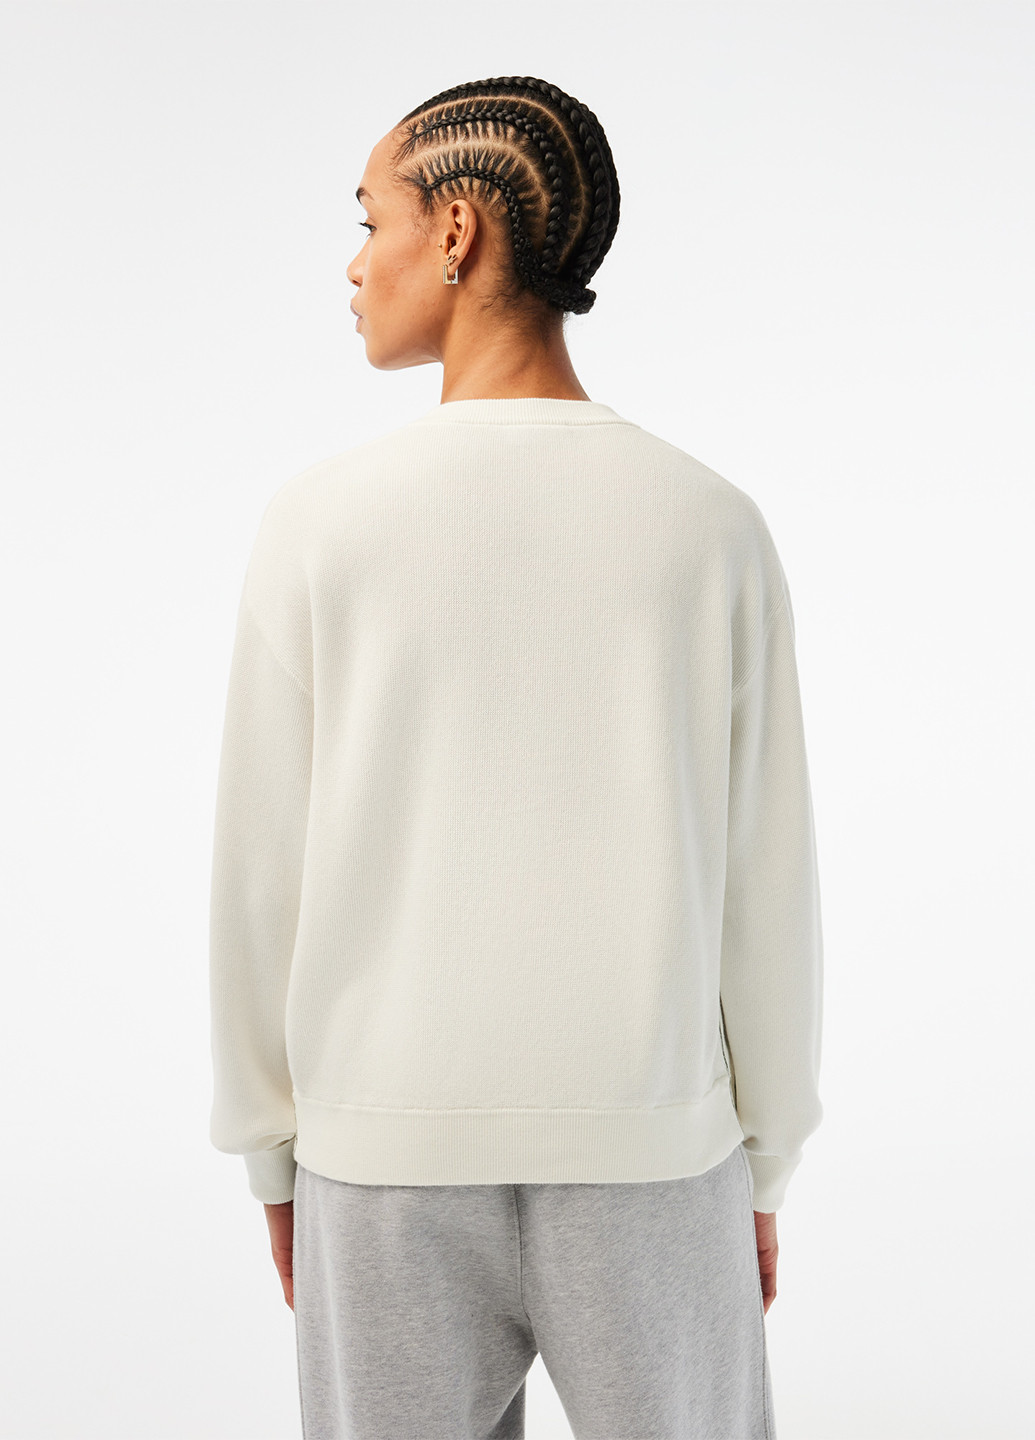 Светло-бежевый демисезонный пуловер пуловер Lacoste